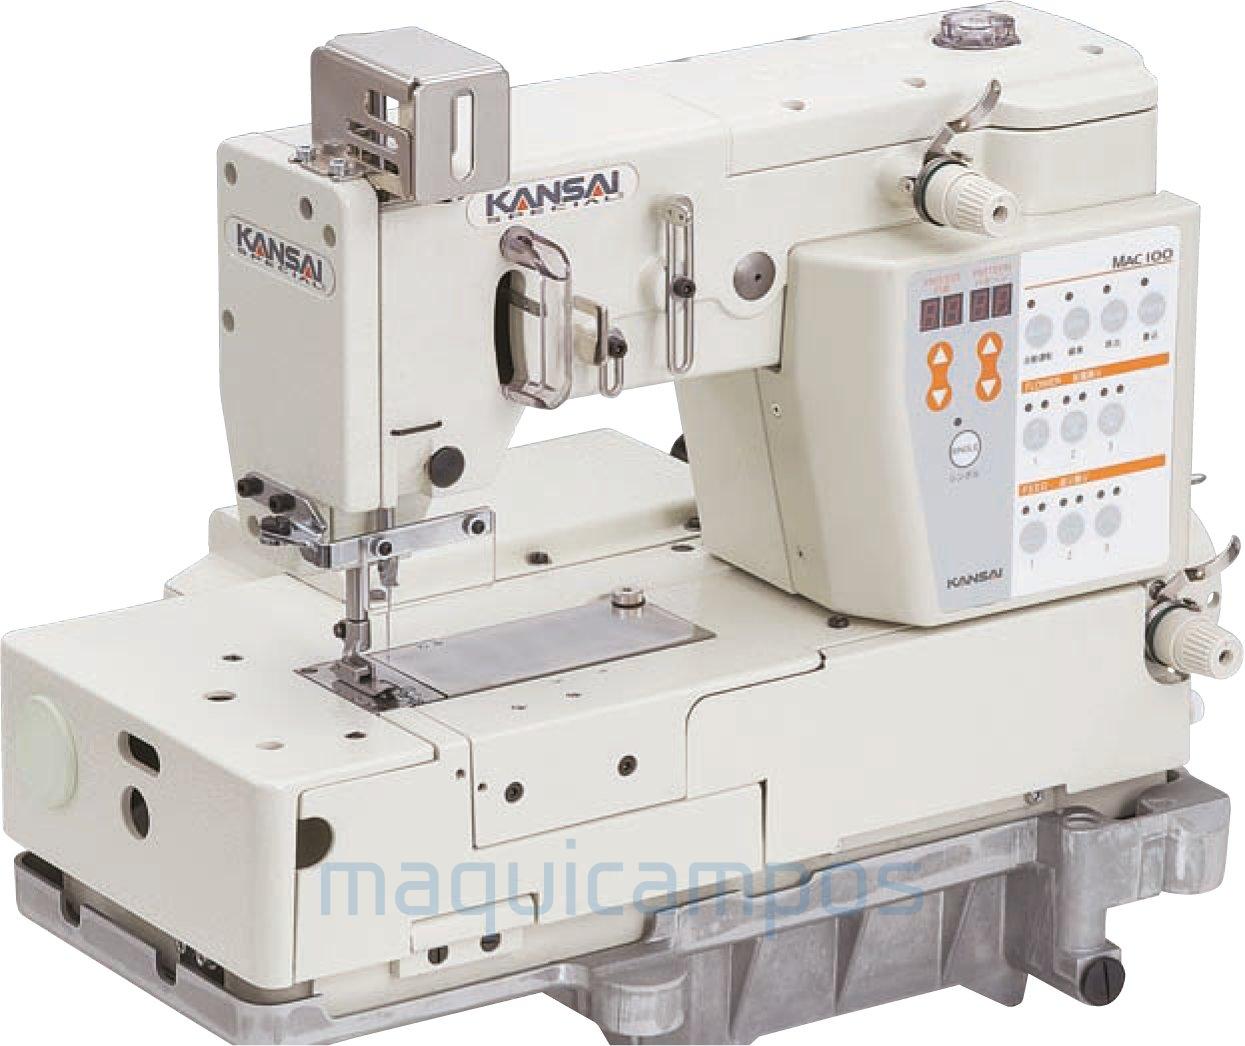 Kansai Special MAC100 Máquina de Puntadas Decorativas